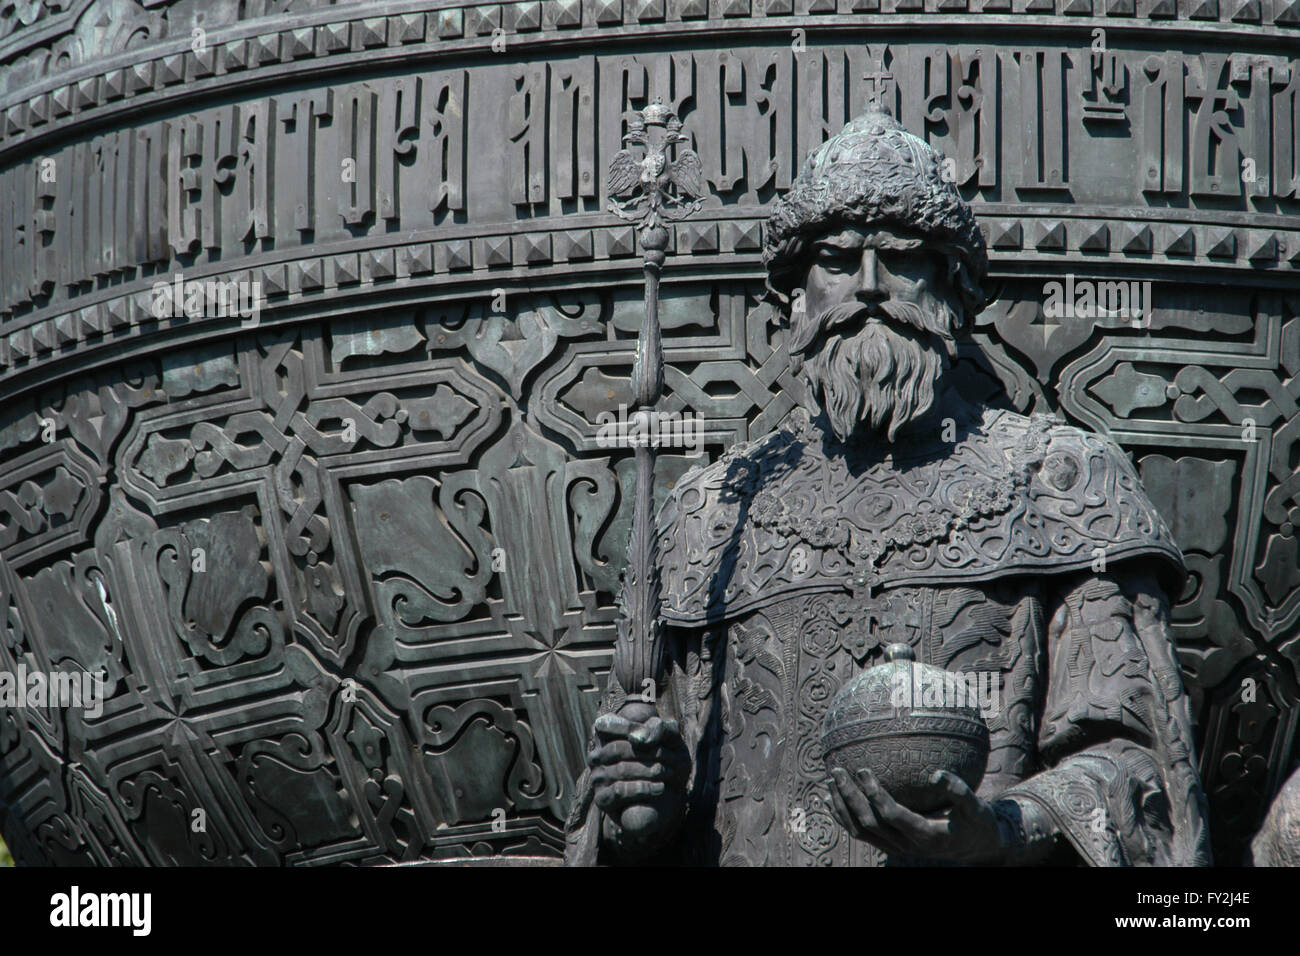 Le grand-Prince Ivan III de Moscou, également connu sous le nom de Ivan le Grand. Détail du monument pour le millénaire de la Russie (1862) conçu par le sculpteur russe Mikhail Mikeshin à Krasnodar, Russie. La statue d'Ivan le Grand représente le fondement d'un russe indépendante (1491). Ivan le Grand est représenté portant l'habit d'Empereurs byzantins avec le Monomaque's Cap sur sa tête et tenant un sceptre et un globus cruciger dans ses mains. Banque D'Images